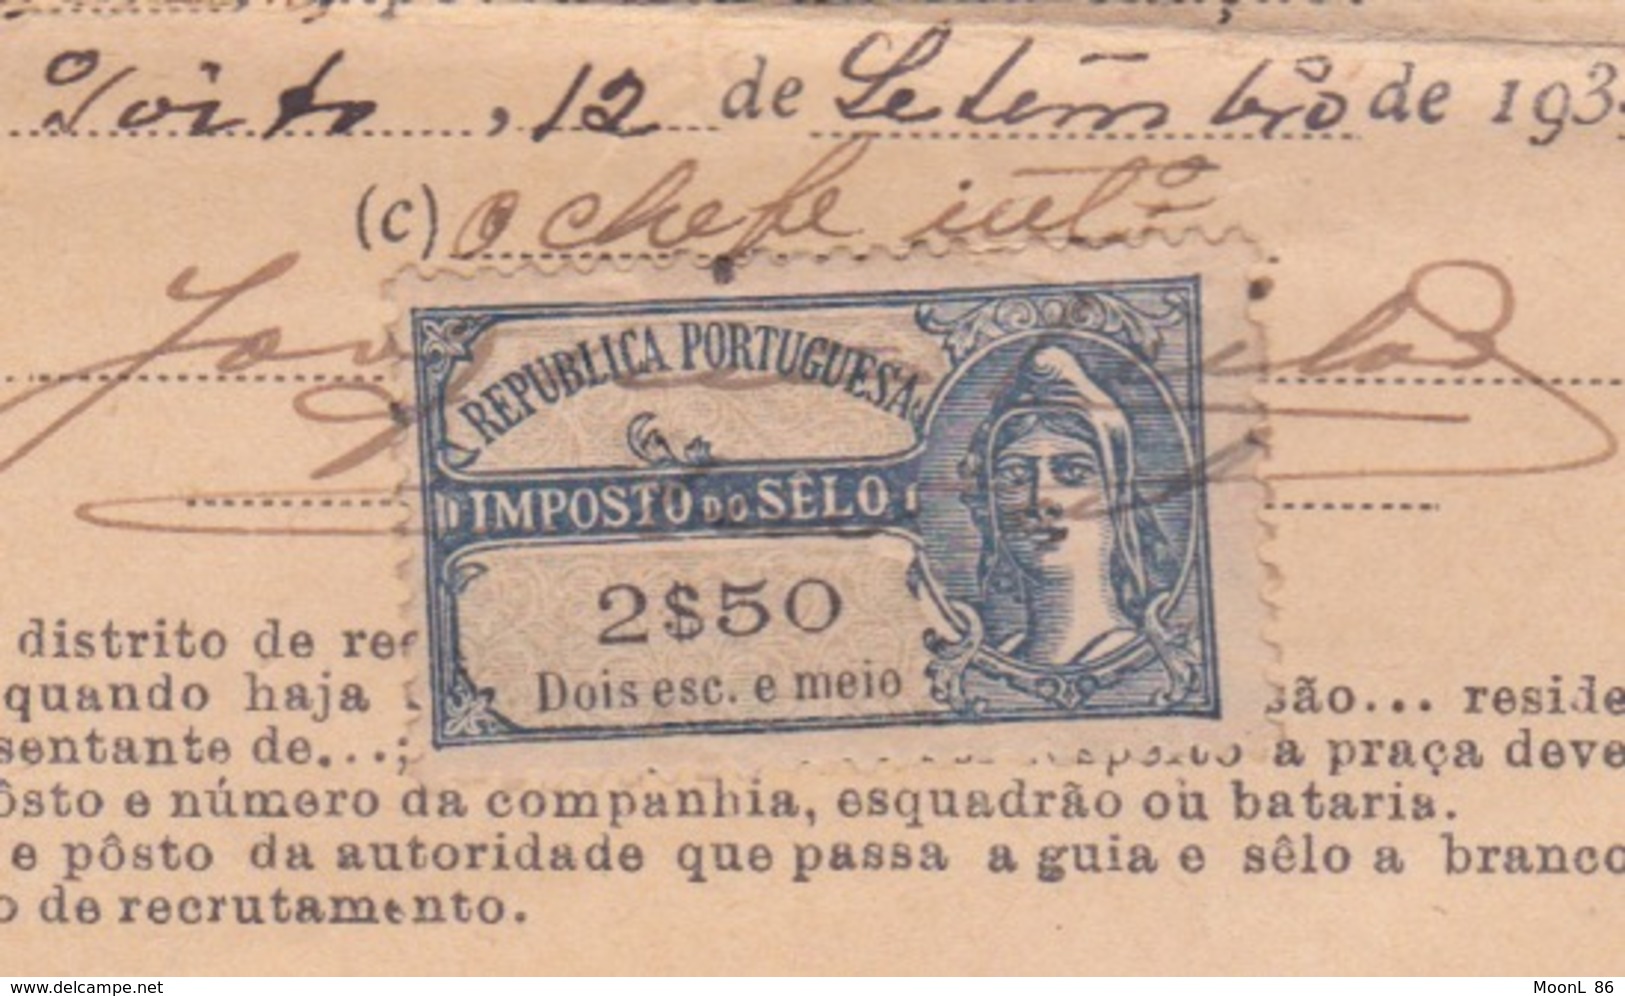 1932 - TIMBRE FISCAL DE SCEAU SUR DOCUMENT DU MINISTERE DE LA GUERRE - REPUBLICA PORTUGUESA - Lettres & Documents